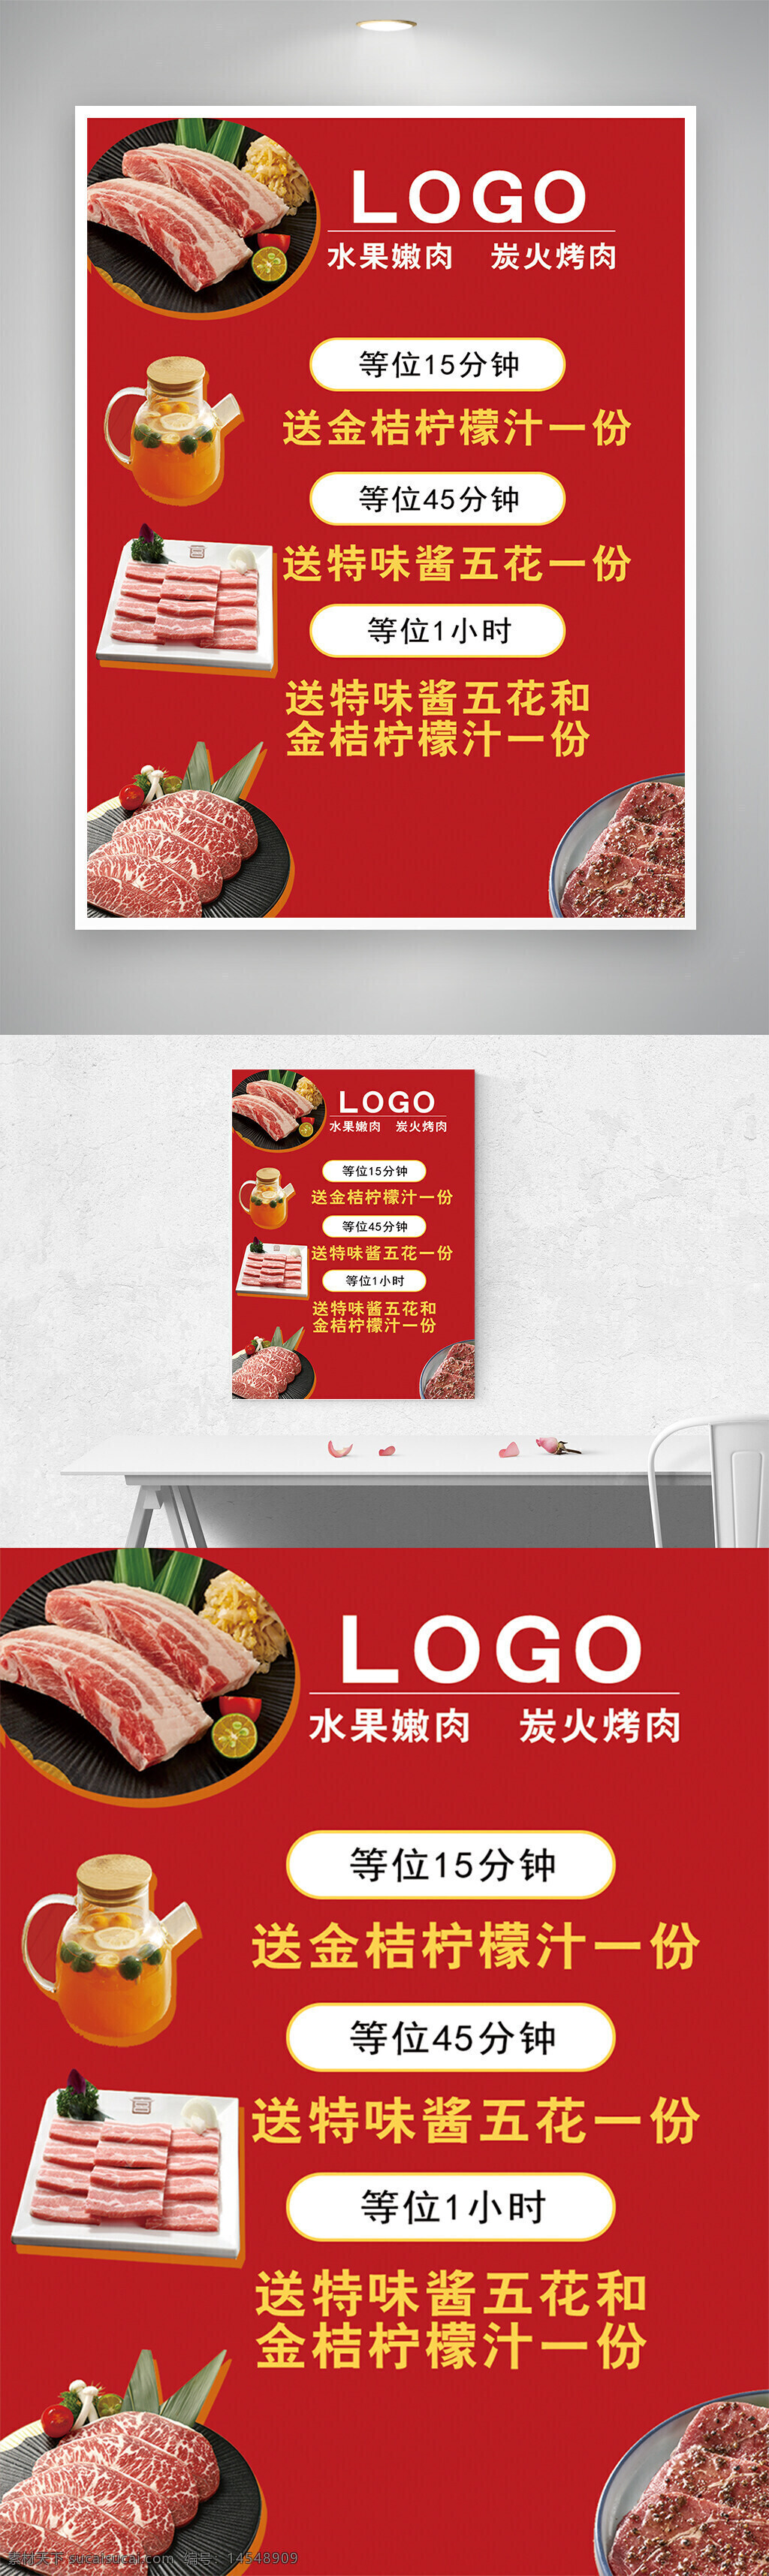 红色背景 烤肉 美食 促销海报